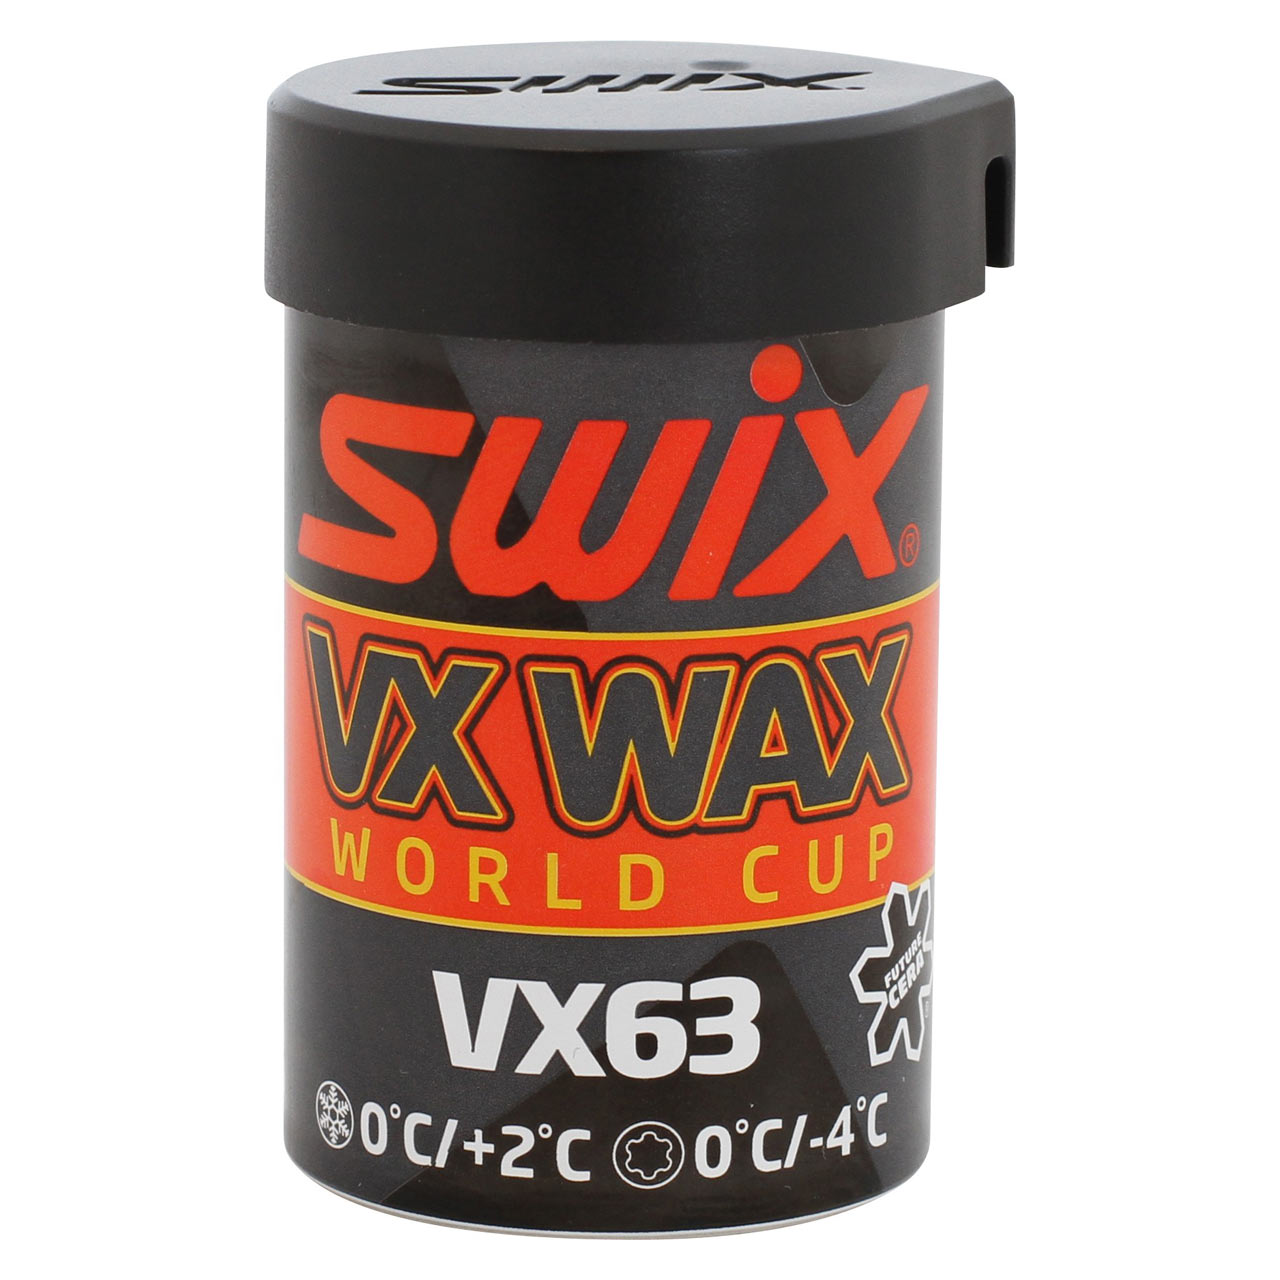 Skiwachs VX63 Fluor New 0/+2C Old 0/-4C